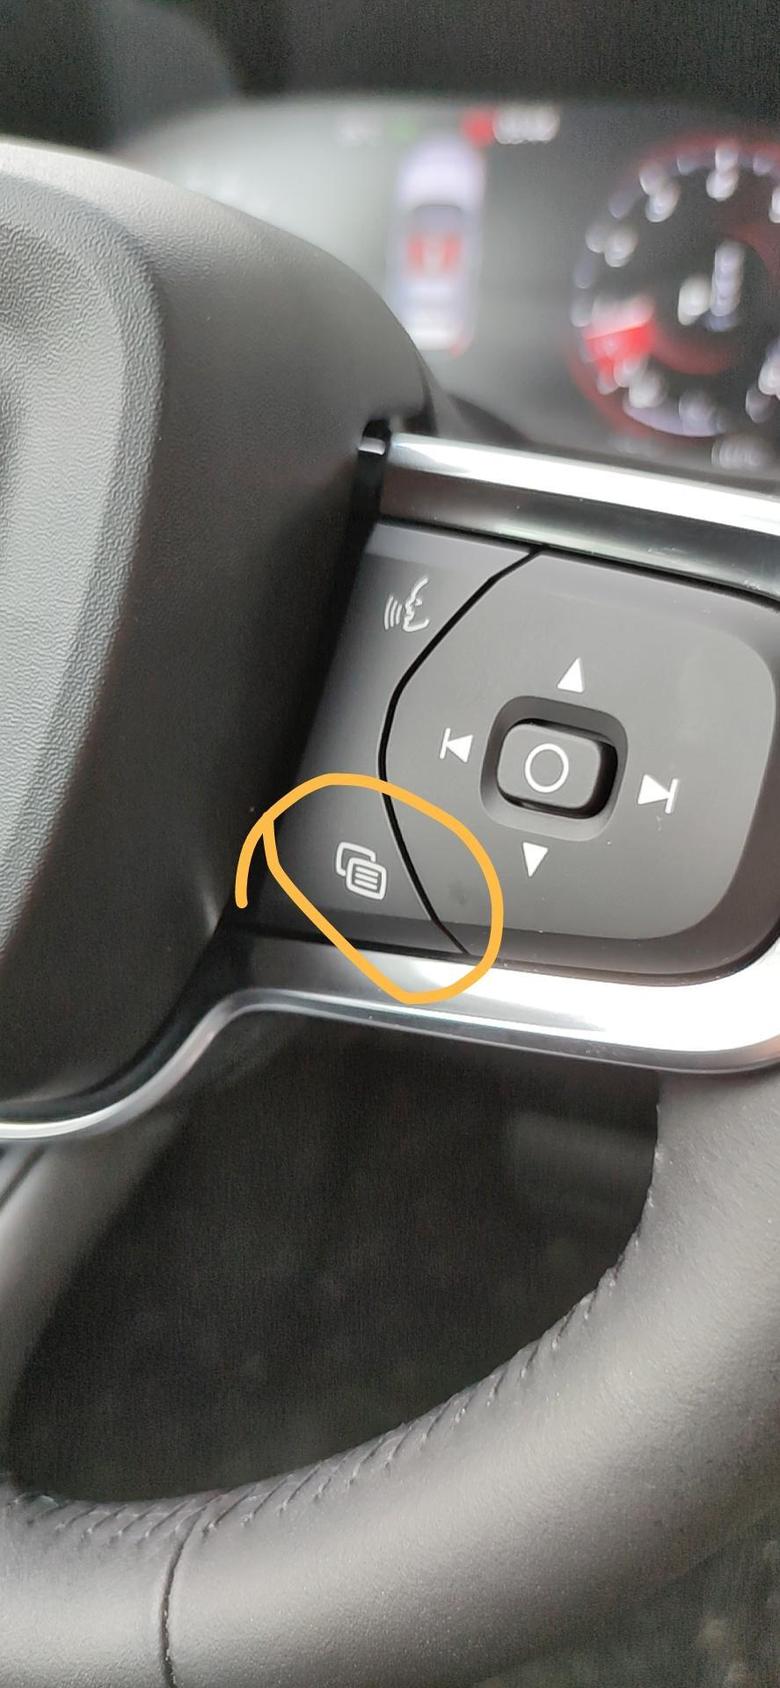 沃尔沃xc404月30号提的新车方向盘右边菜单键按钮不灵敏有木有遇到相同情况